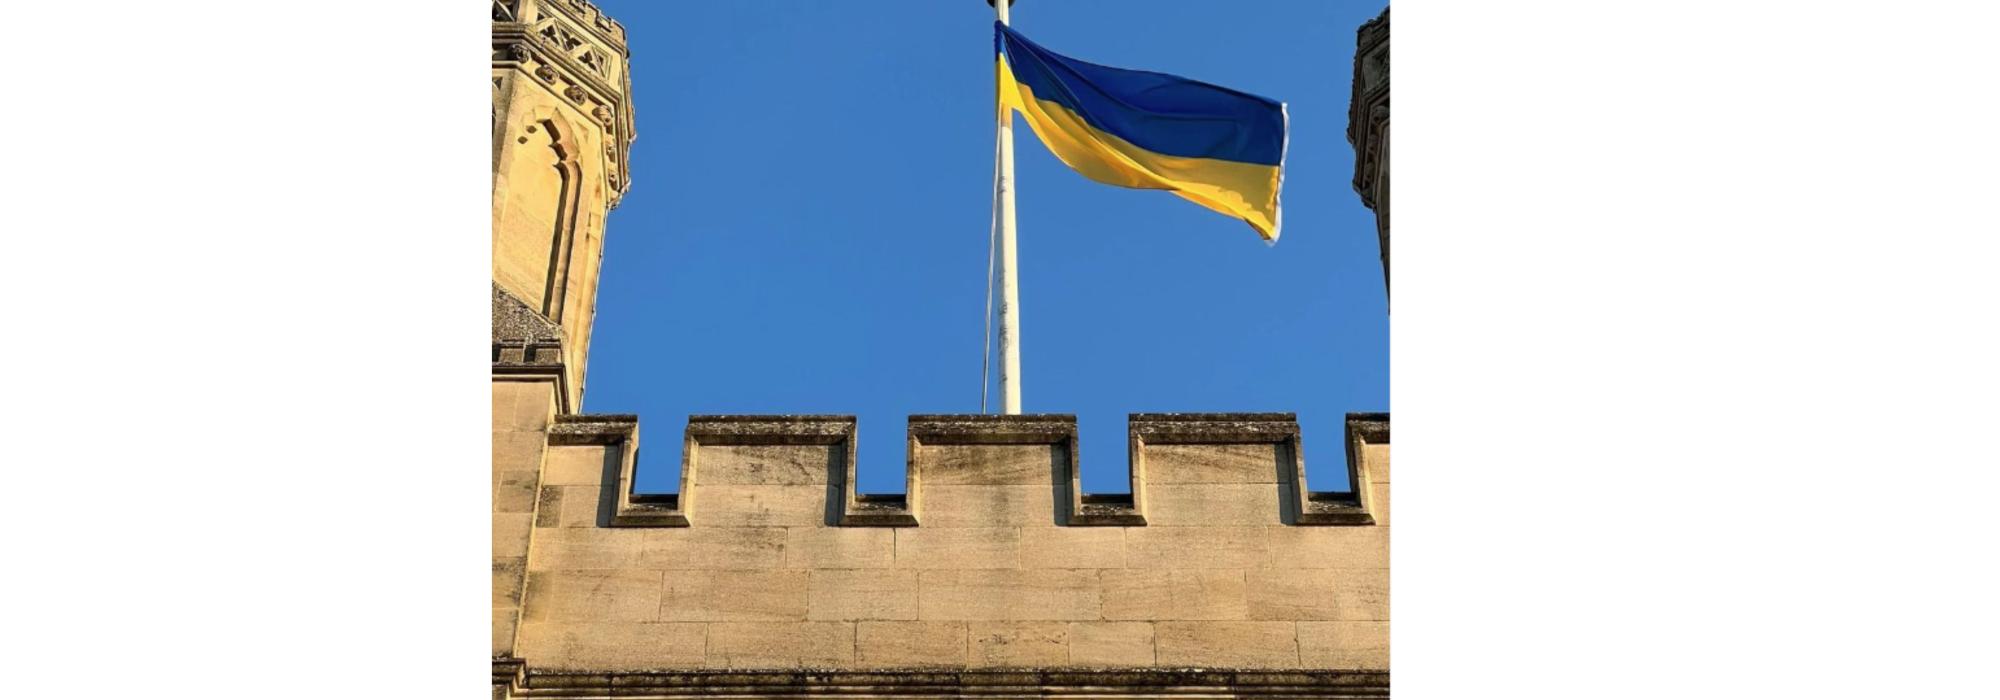 Ukrainian flag flying over Merton College